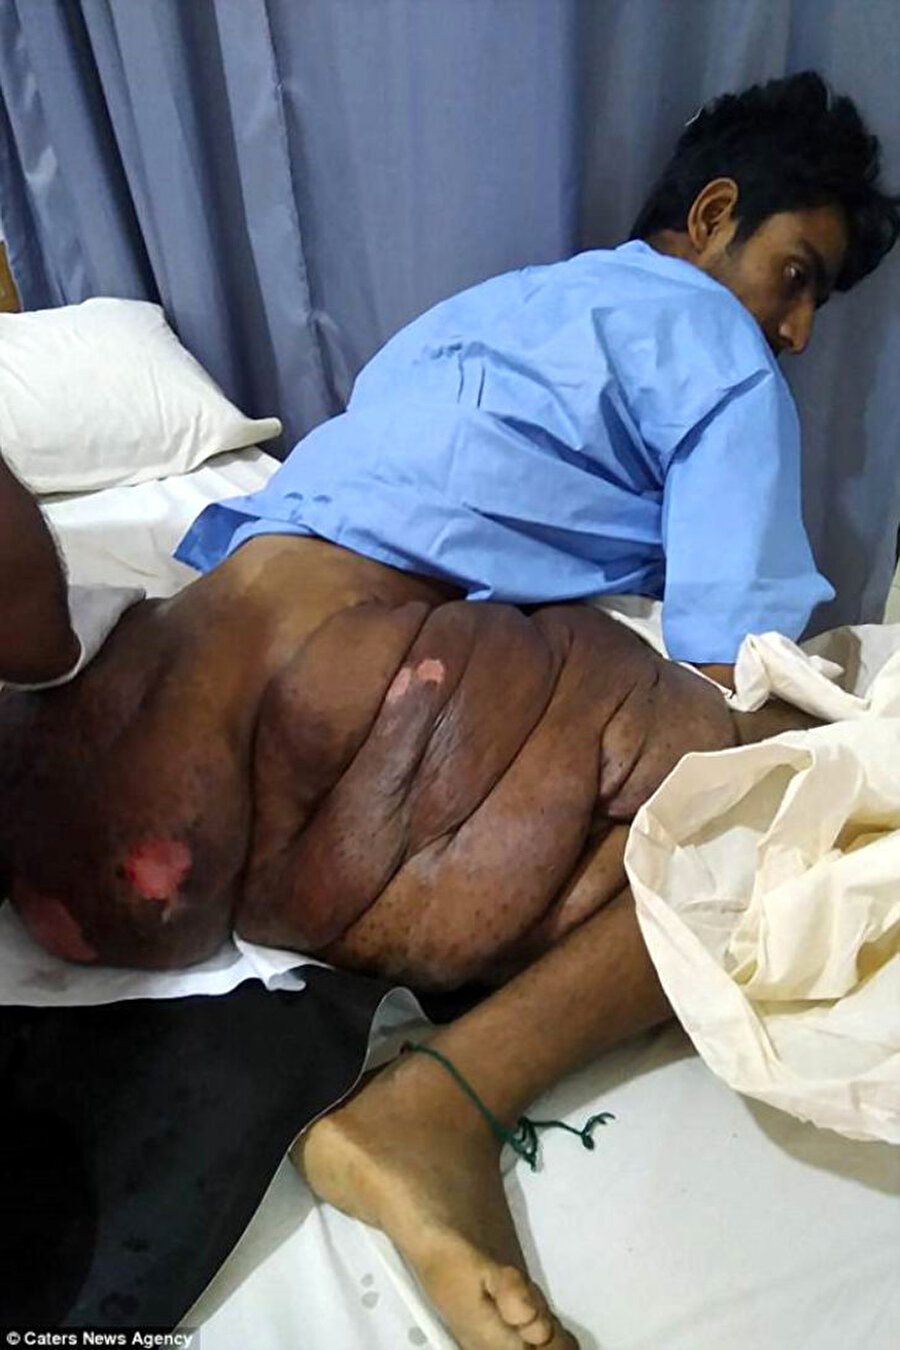 Pakistan'ın Karaçi kentinde yaşayan Pallari, geçtiğimiz çarşamba günü sağ bacağındaki tümörden kurtulmak için Dr. Ruth Pfau hastanesine yattı. Pallari'nin sağ bacağındaki devasa tümör, 4 saatlik bir ameliyatla dört cerrah tarafından çıkarıldı.

                                    
                                